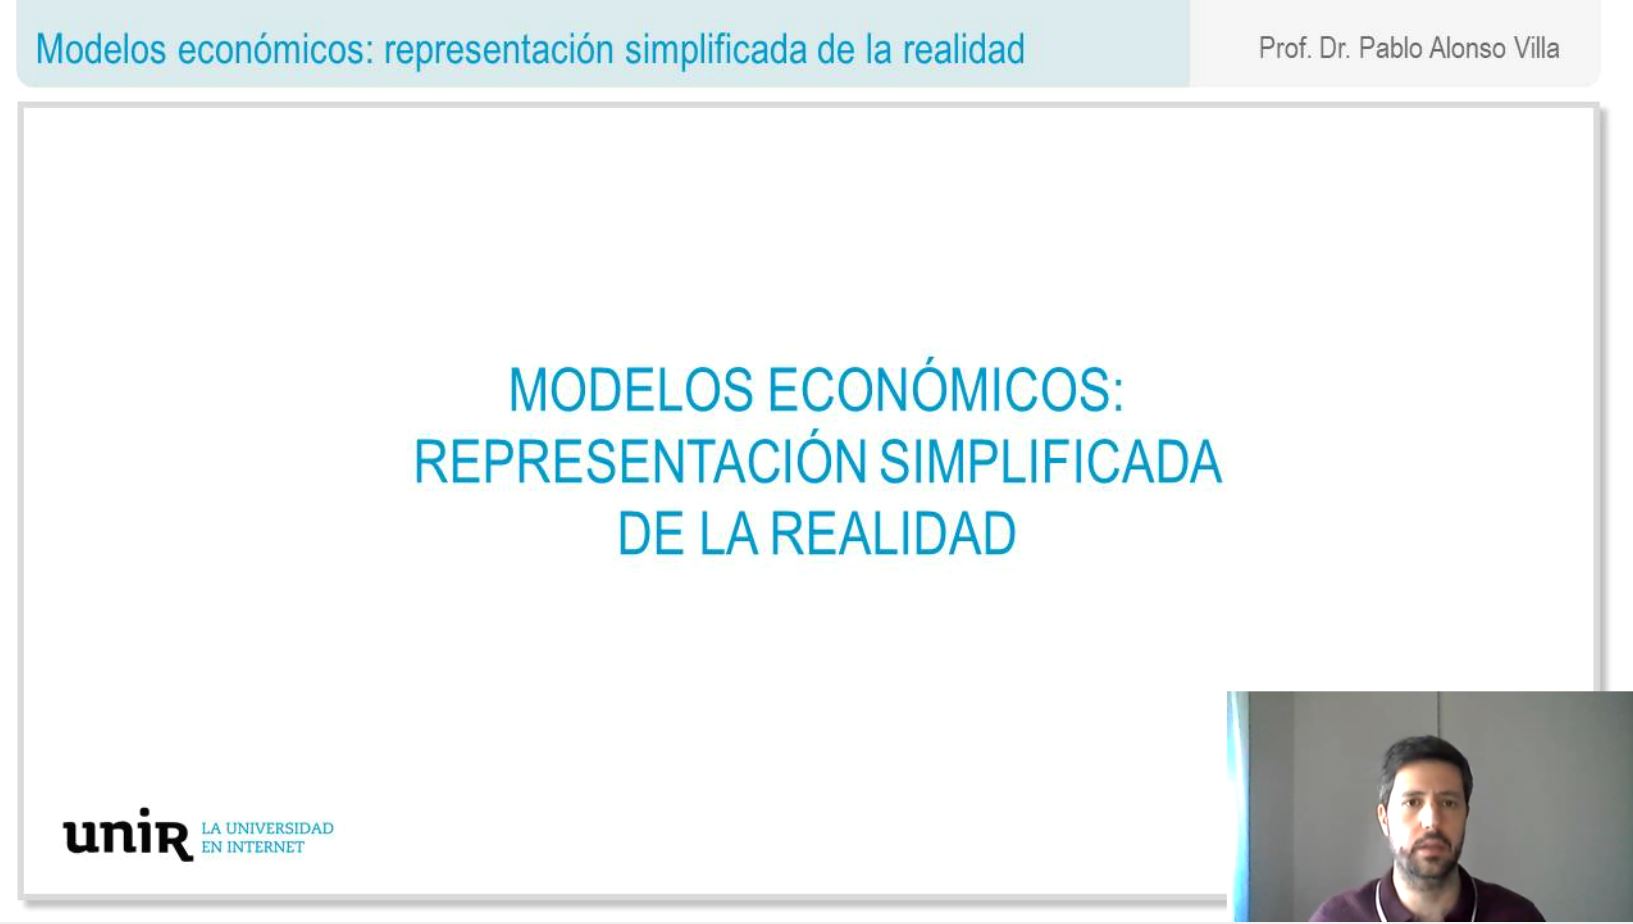 Modelos-economicos-representacion-simplificada-de-la-realidad